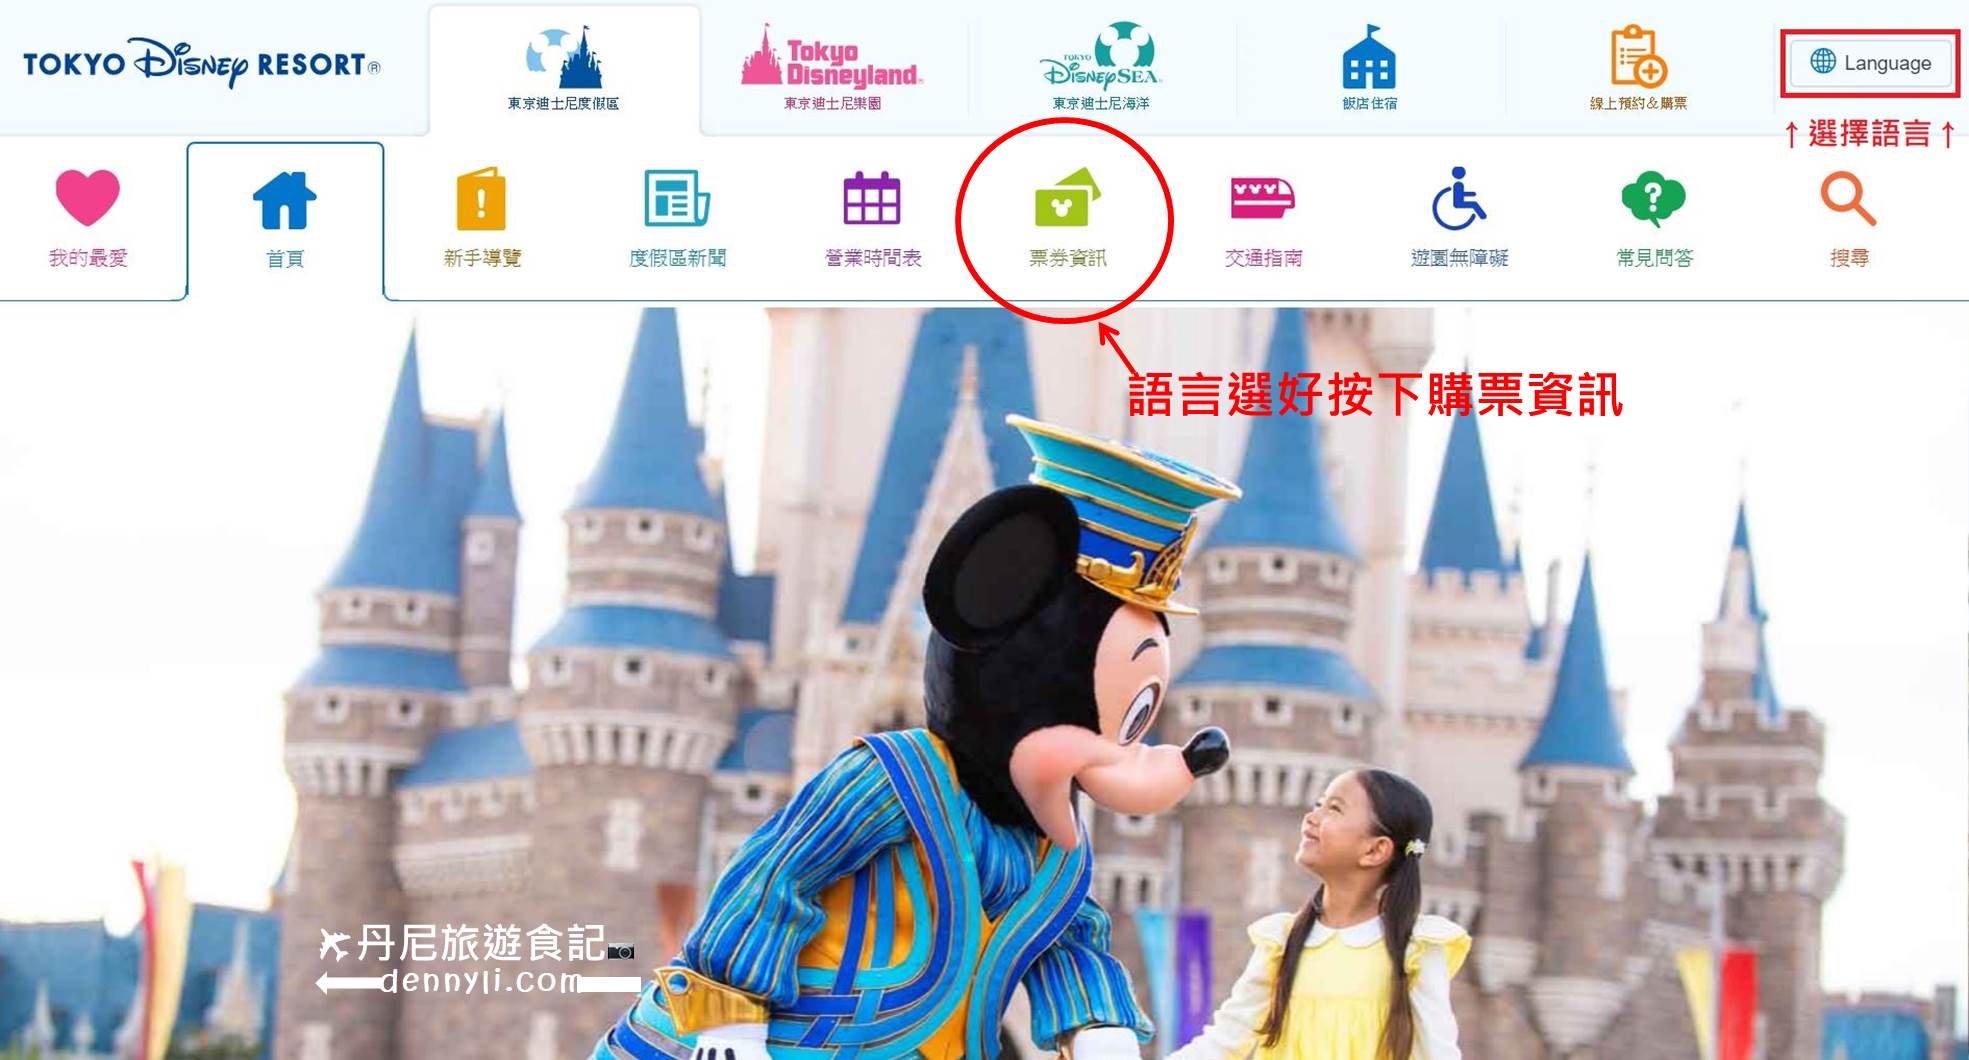 東京迪士尼官方首頁